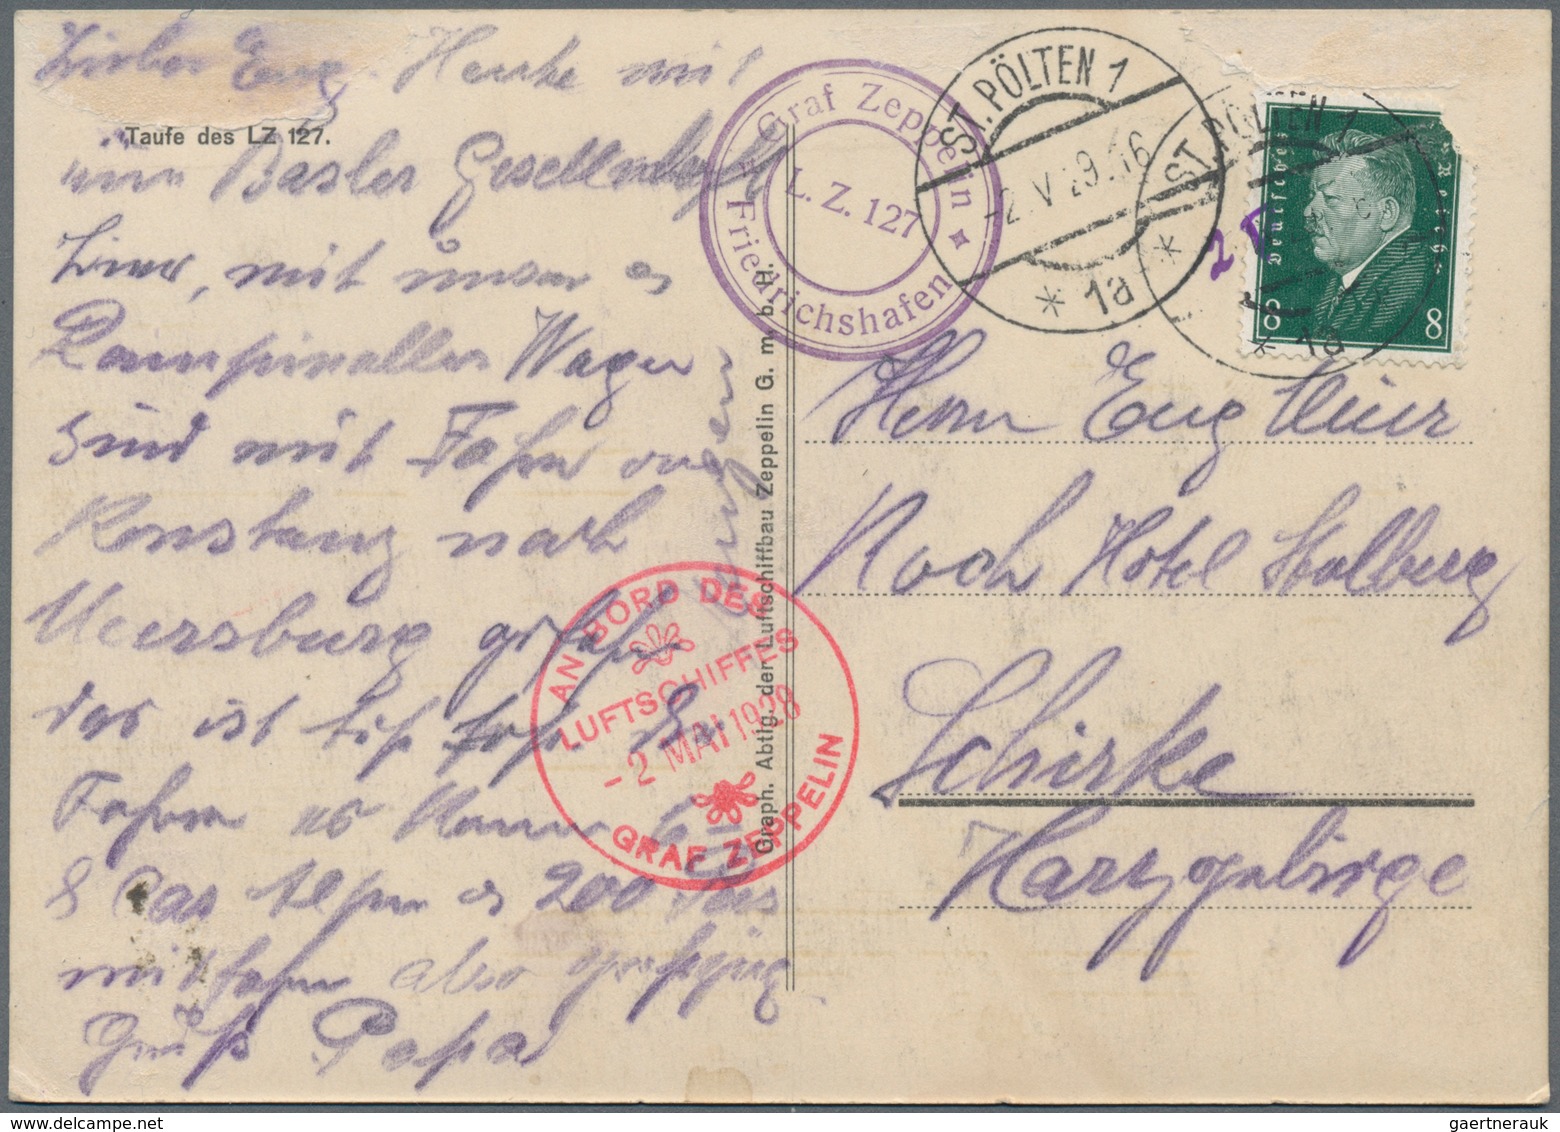 Zeppelinpost Deutschland: 1929, Abwurf St. Pölten, Postkarte Mit Abbildung Des LT 127 Frankiert Mit - Luft- Und Zeppelinpost